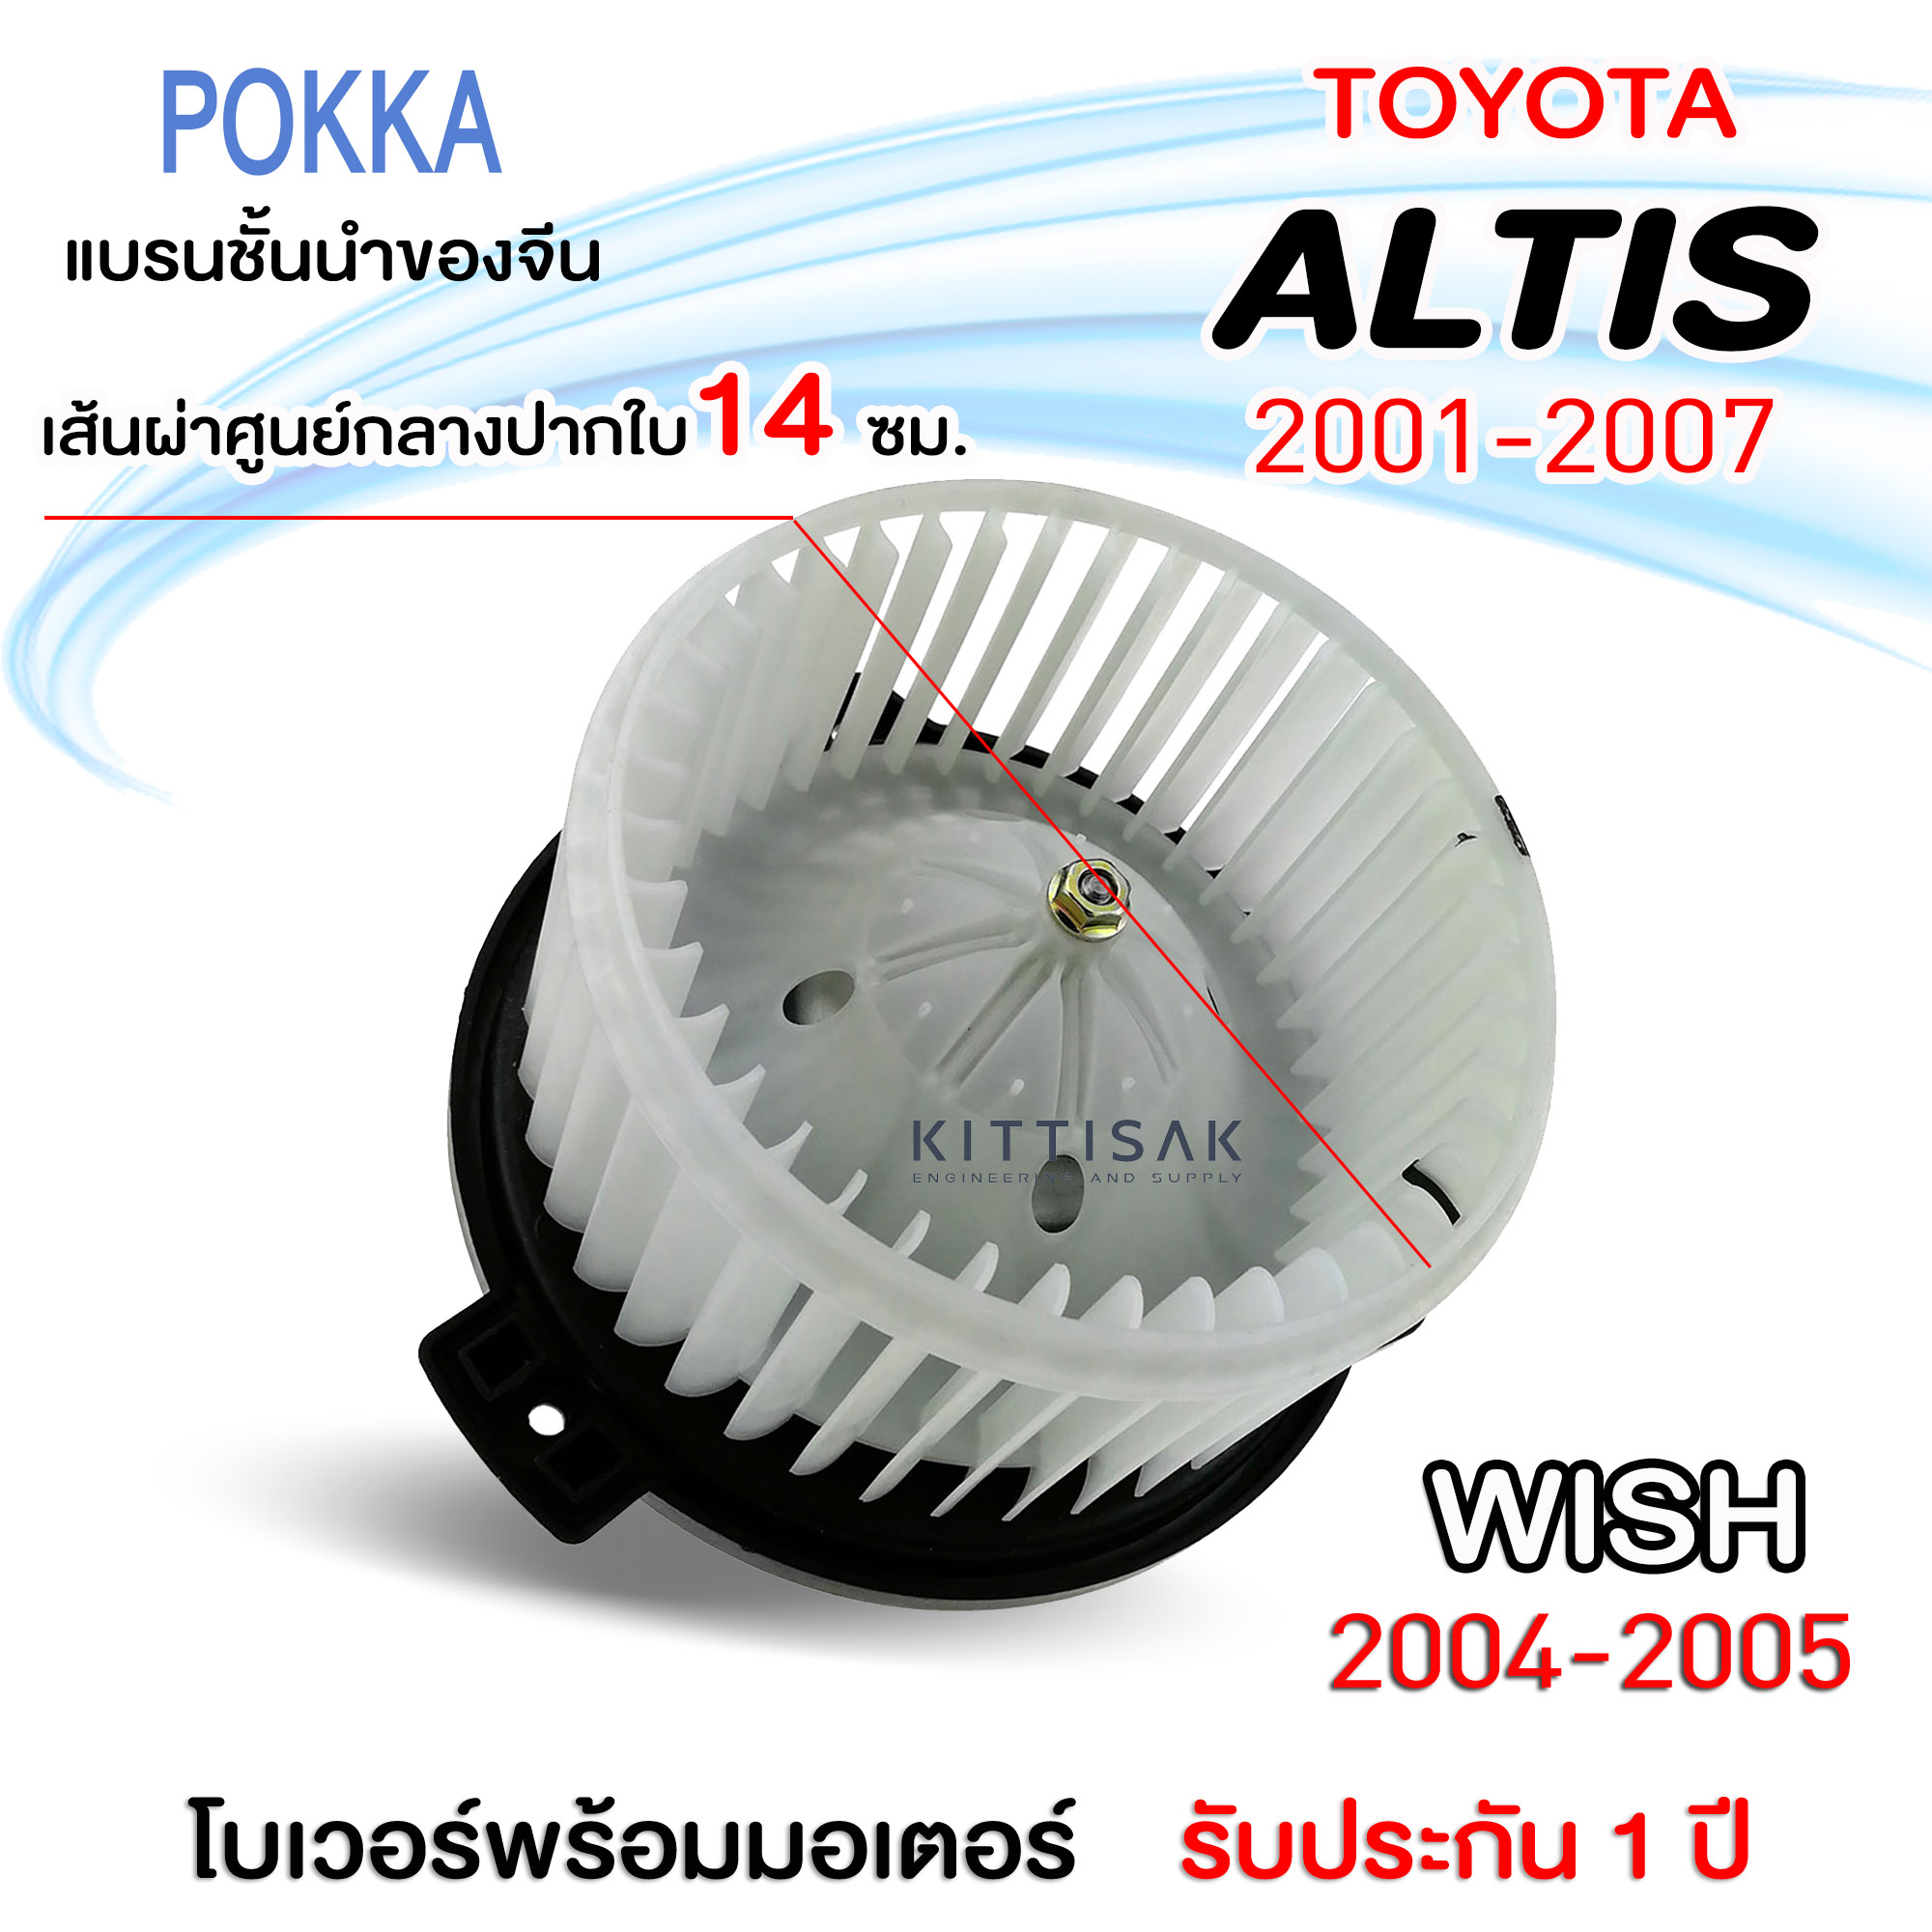 โบเวอร์แอร์ Toyota Altis ปี 2001-2007 Wish 2004-2005 โตโยต้า อัลติส ปี 01-07 วิช ปี 04-05 โบลเวอร์แอร์ โบว์เวอร์แอร์ พัดลมแอร์ โบเวอร์